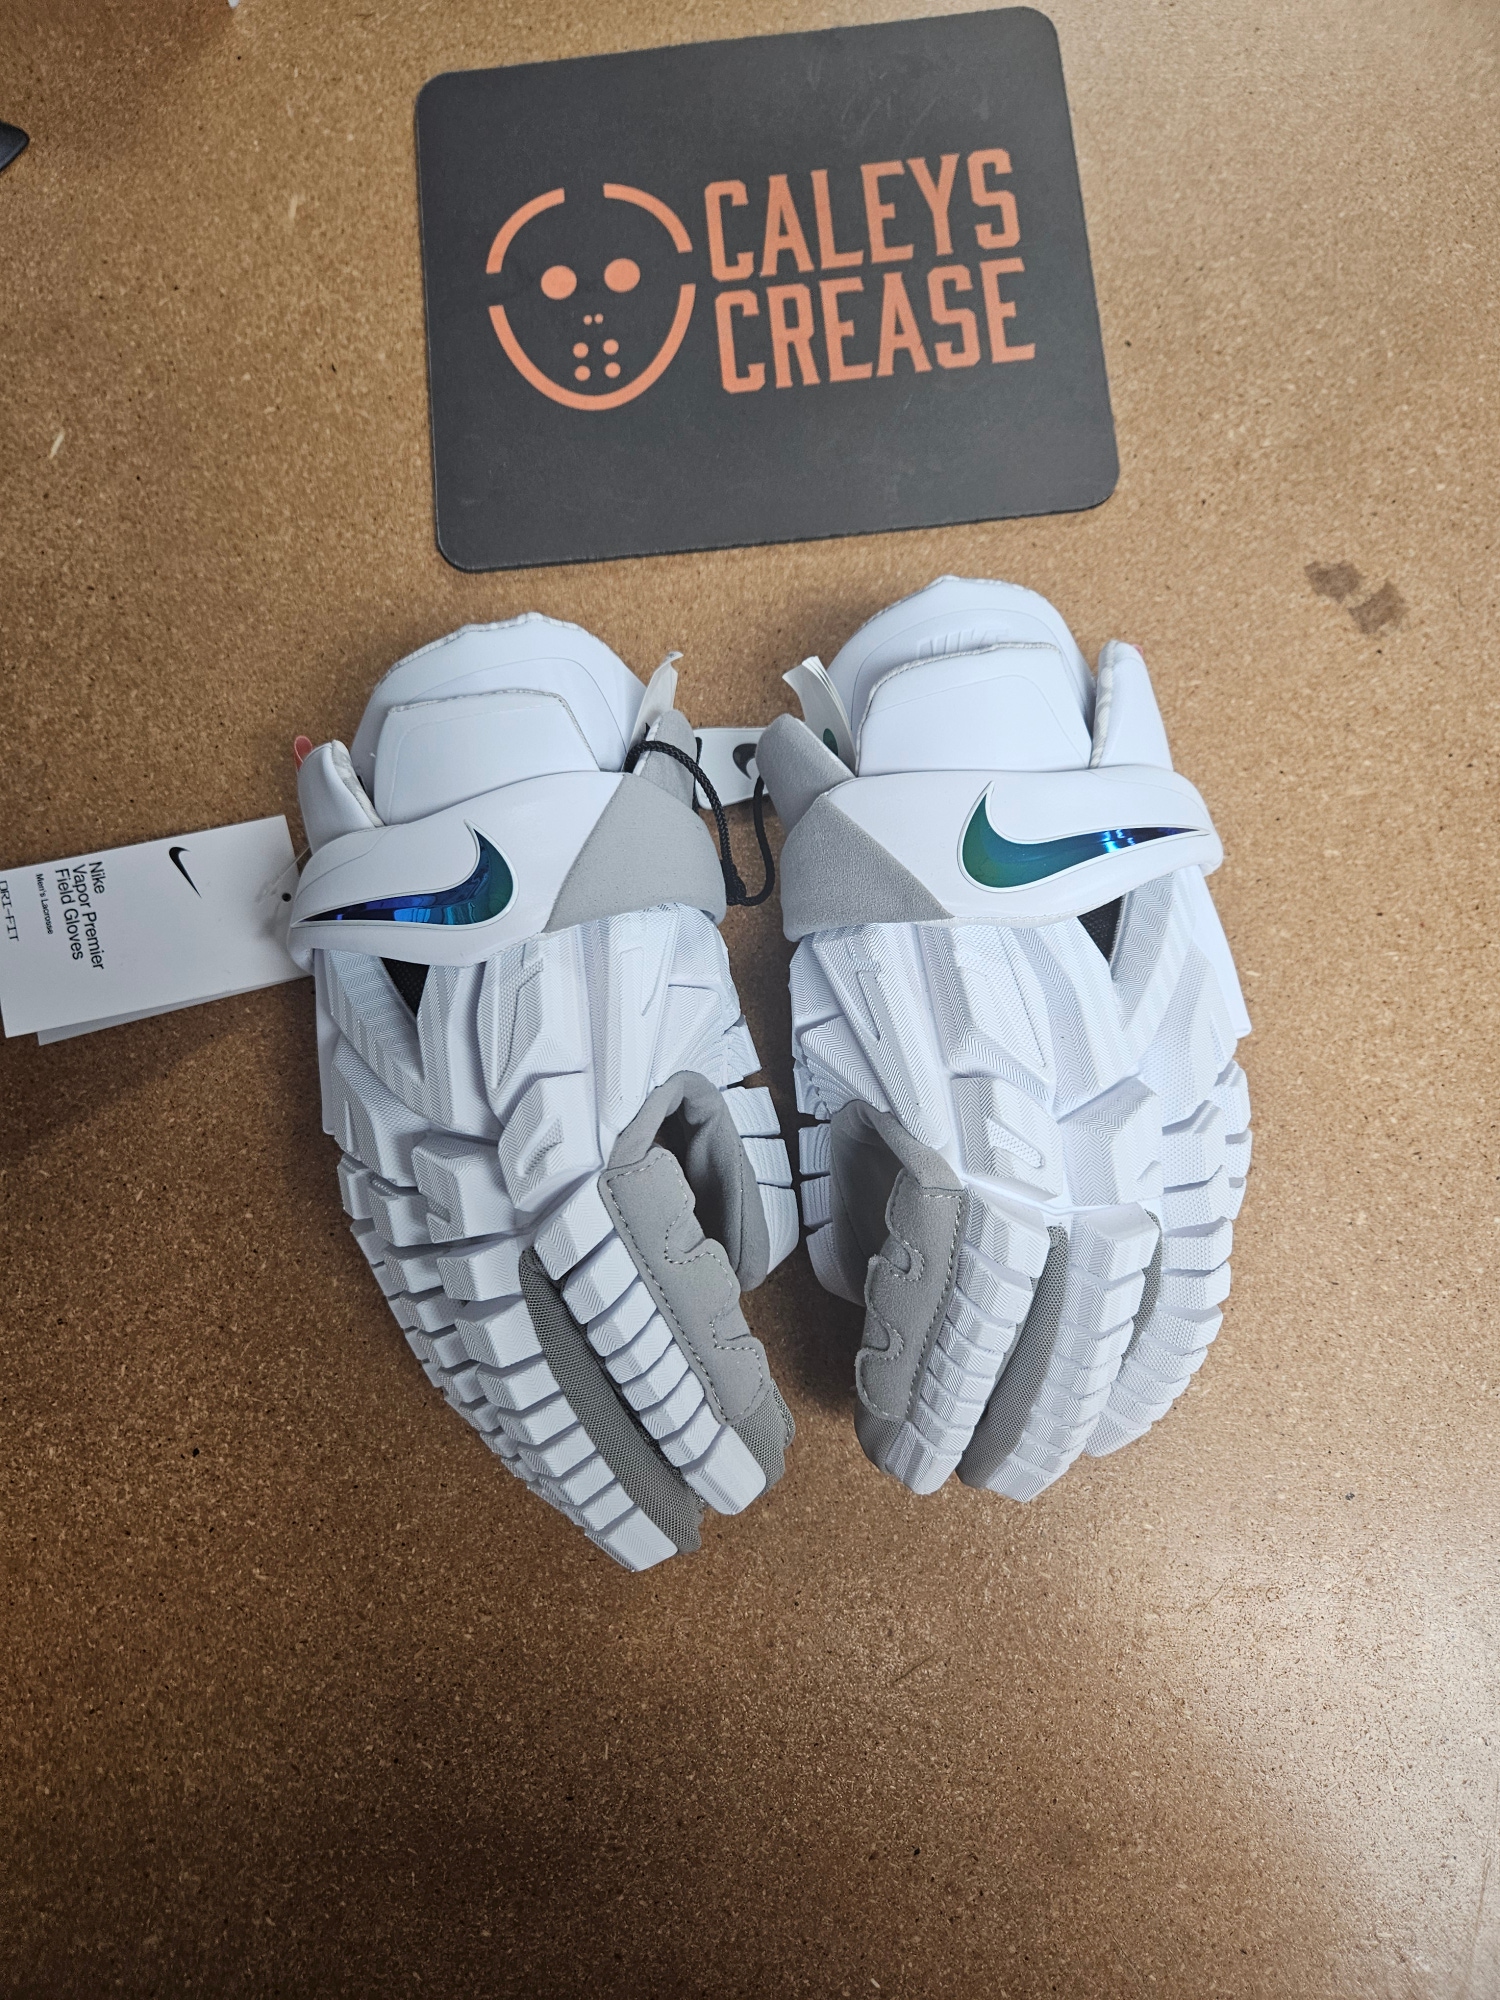 New Player's Nike Vapor Premier Lacrosse Gloves 13"